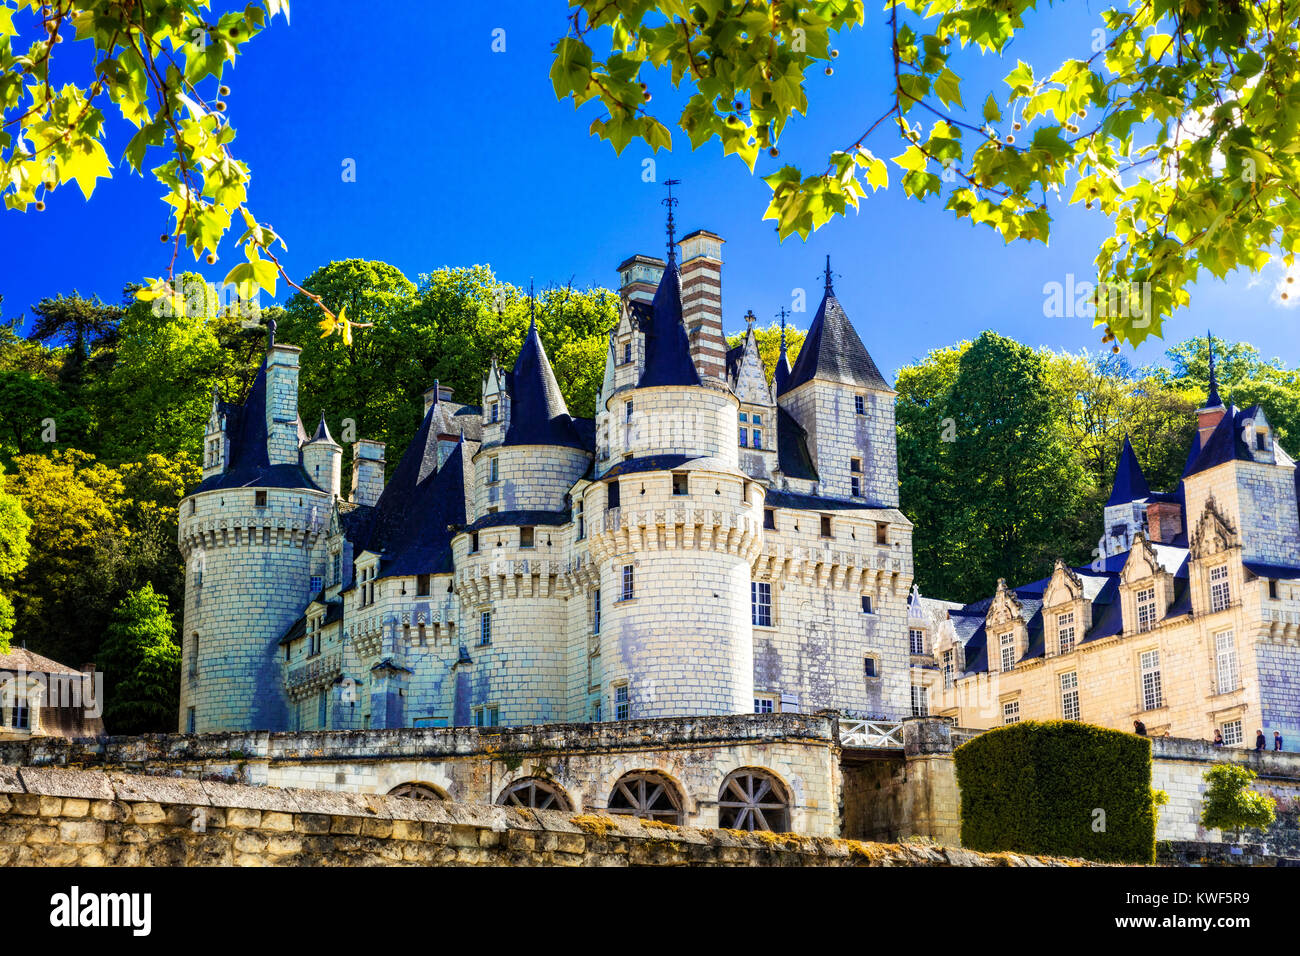 Magnifica Usse castello medievale,vista panoramica,della Valle della Loira, Francia. Foto Stock